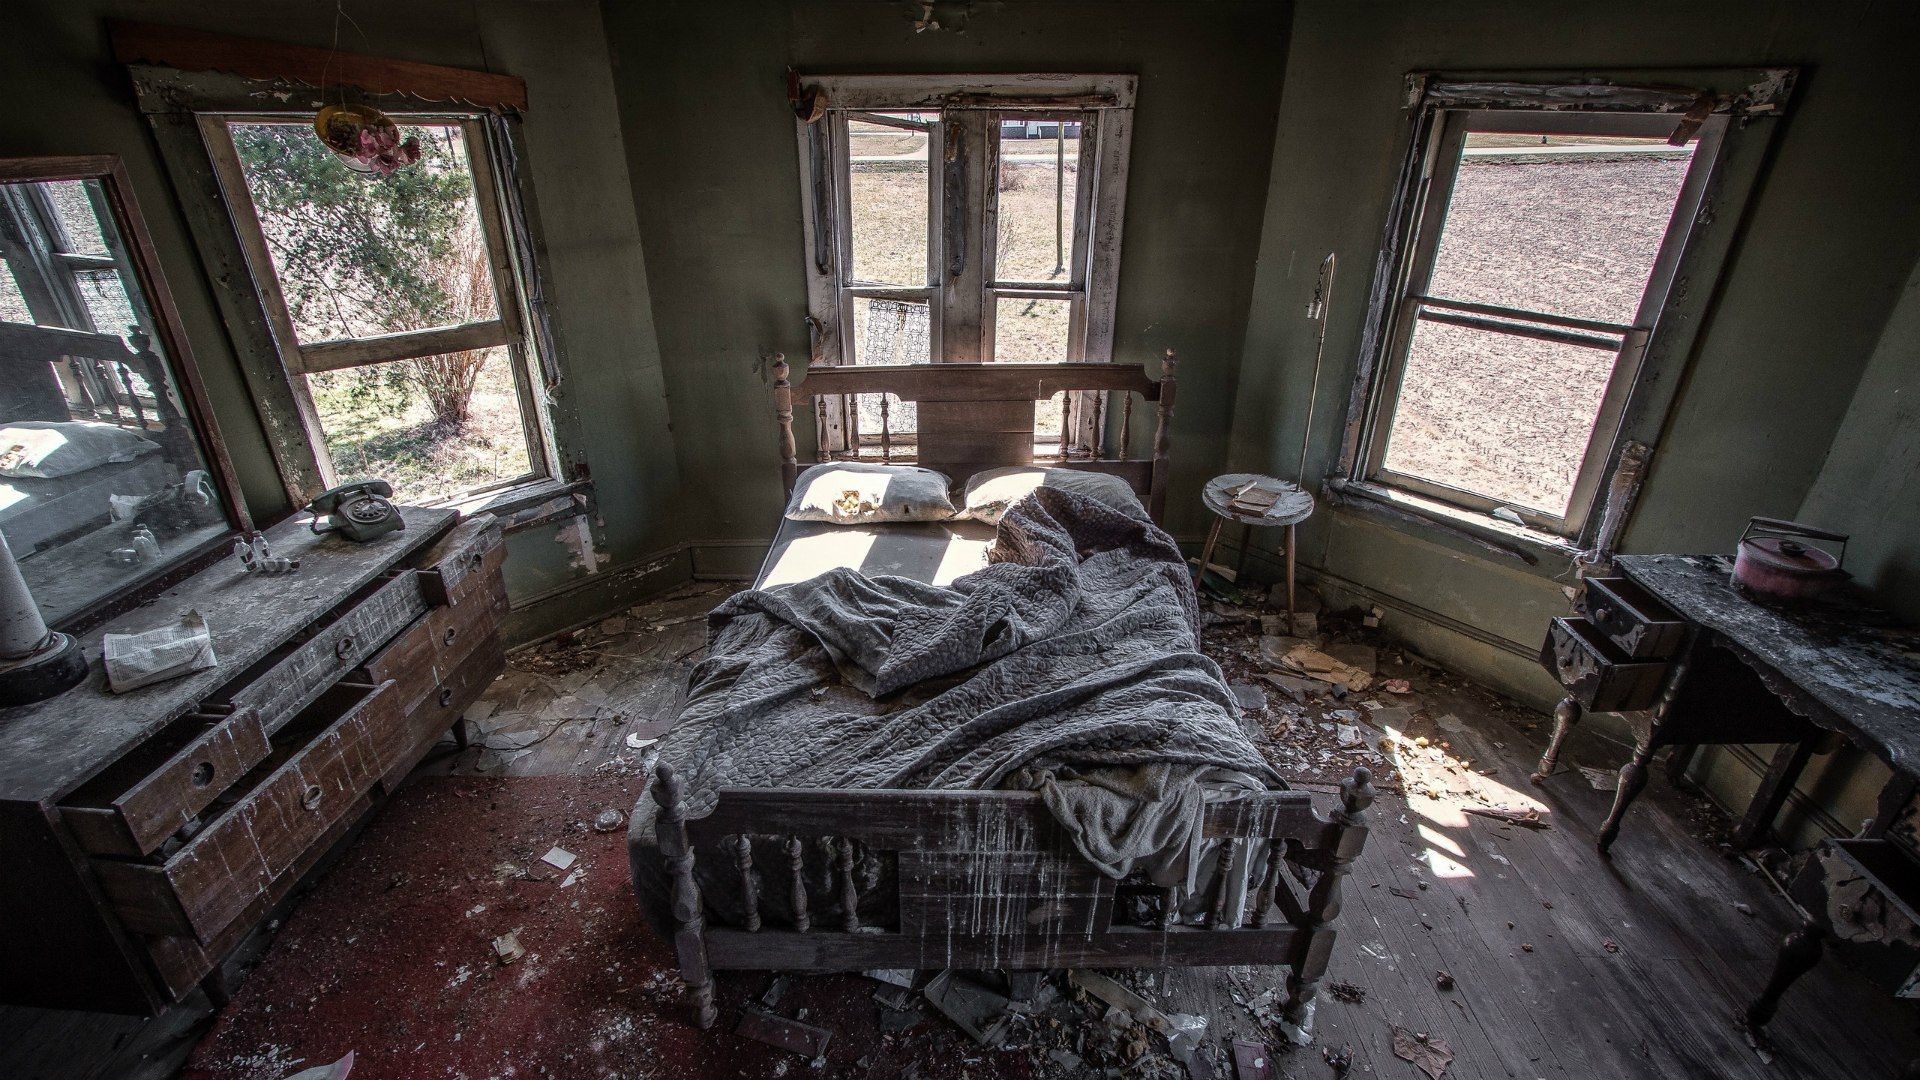 Bedroom in an abandoned house Desktop wallpaper 1920x1080